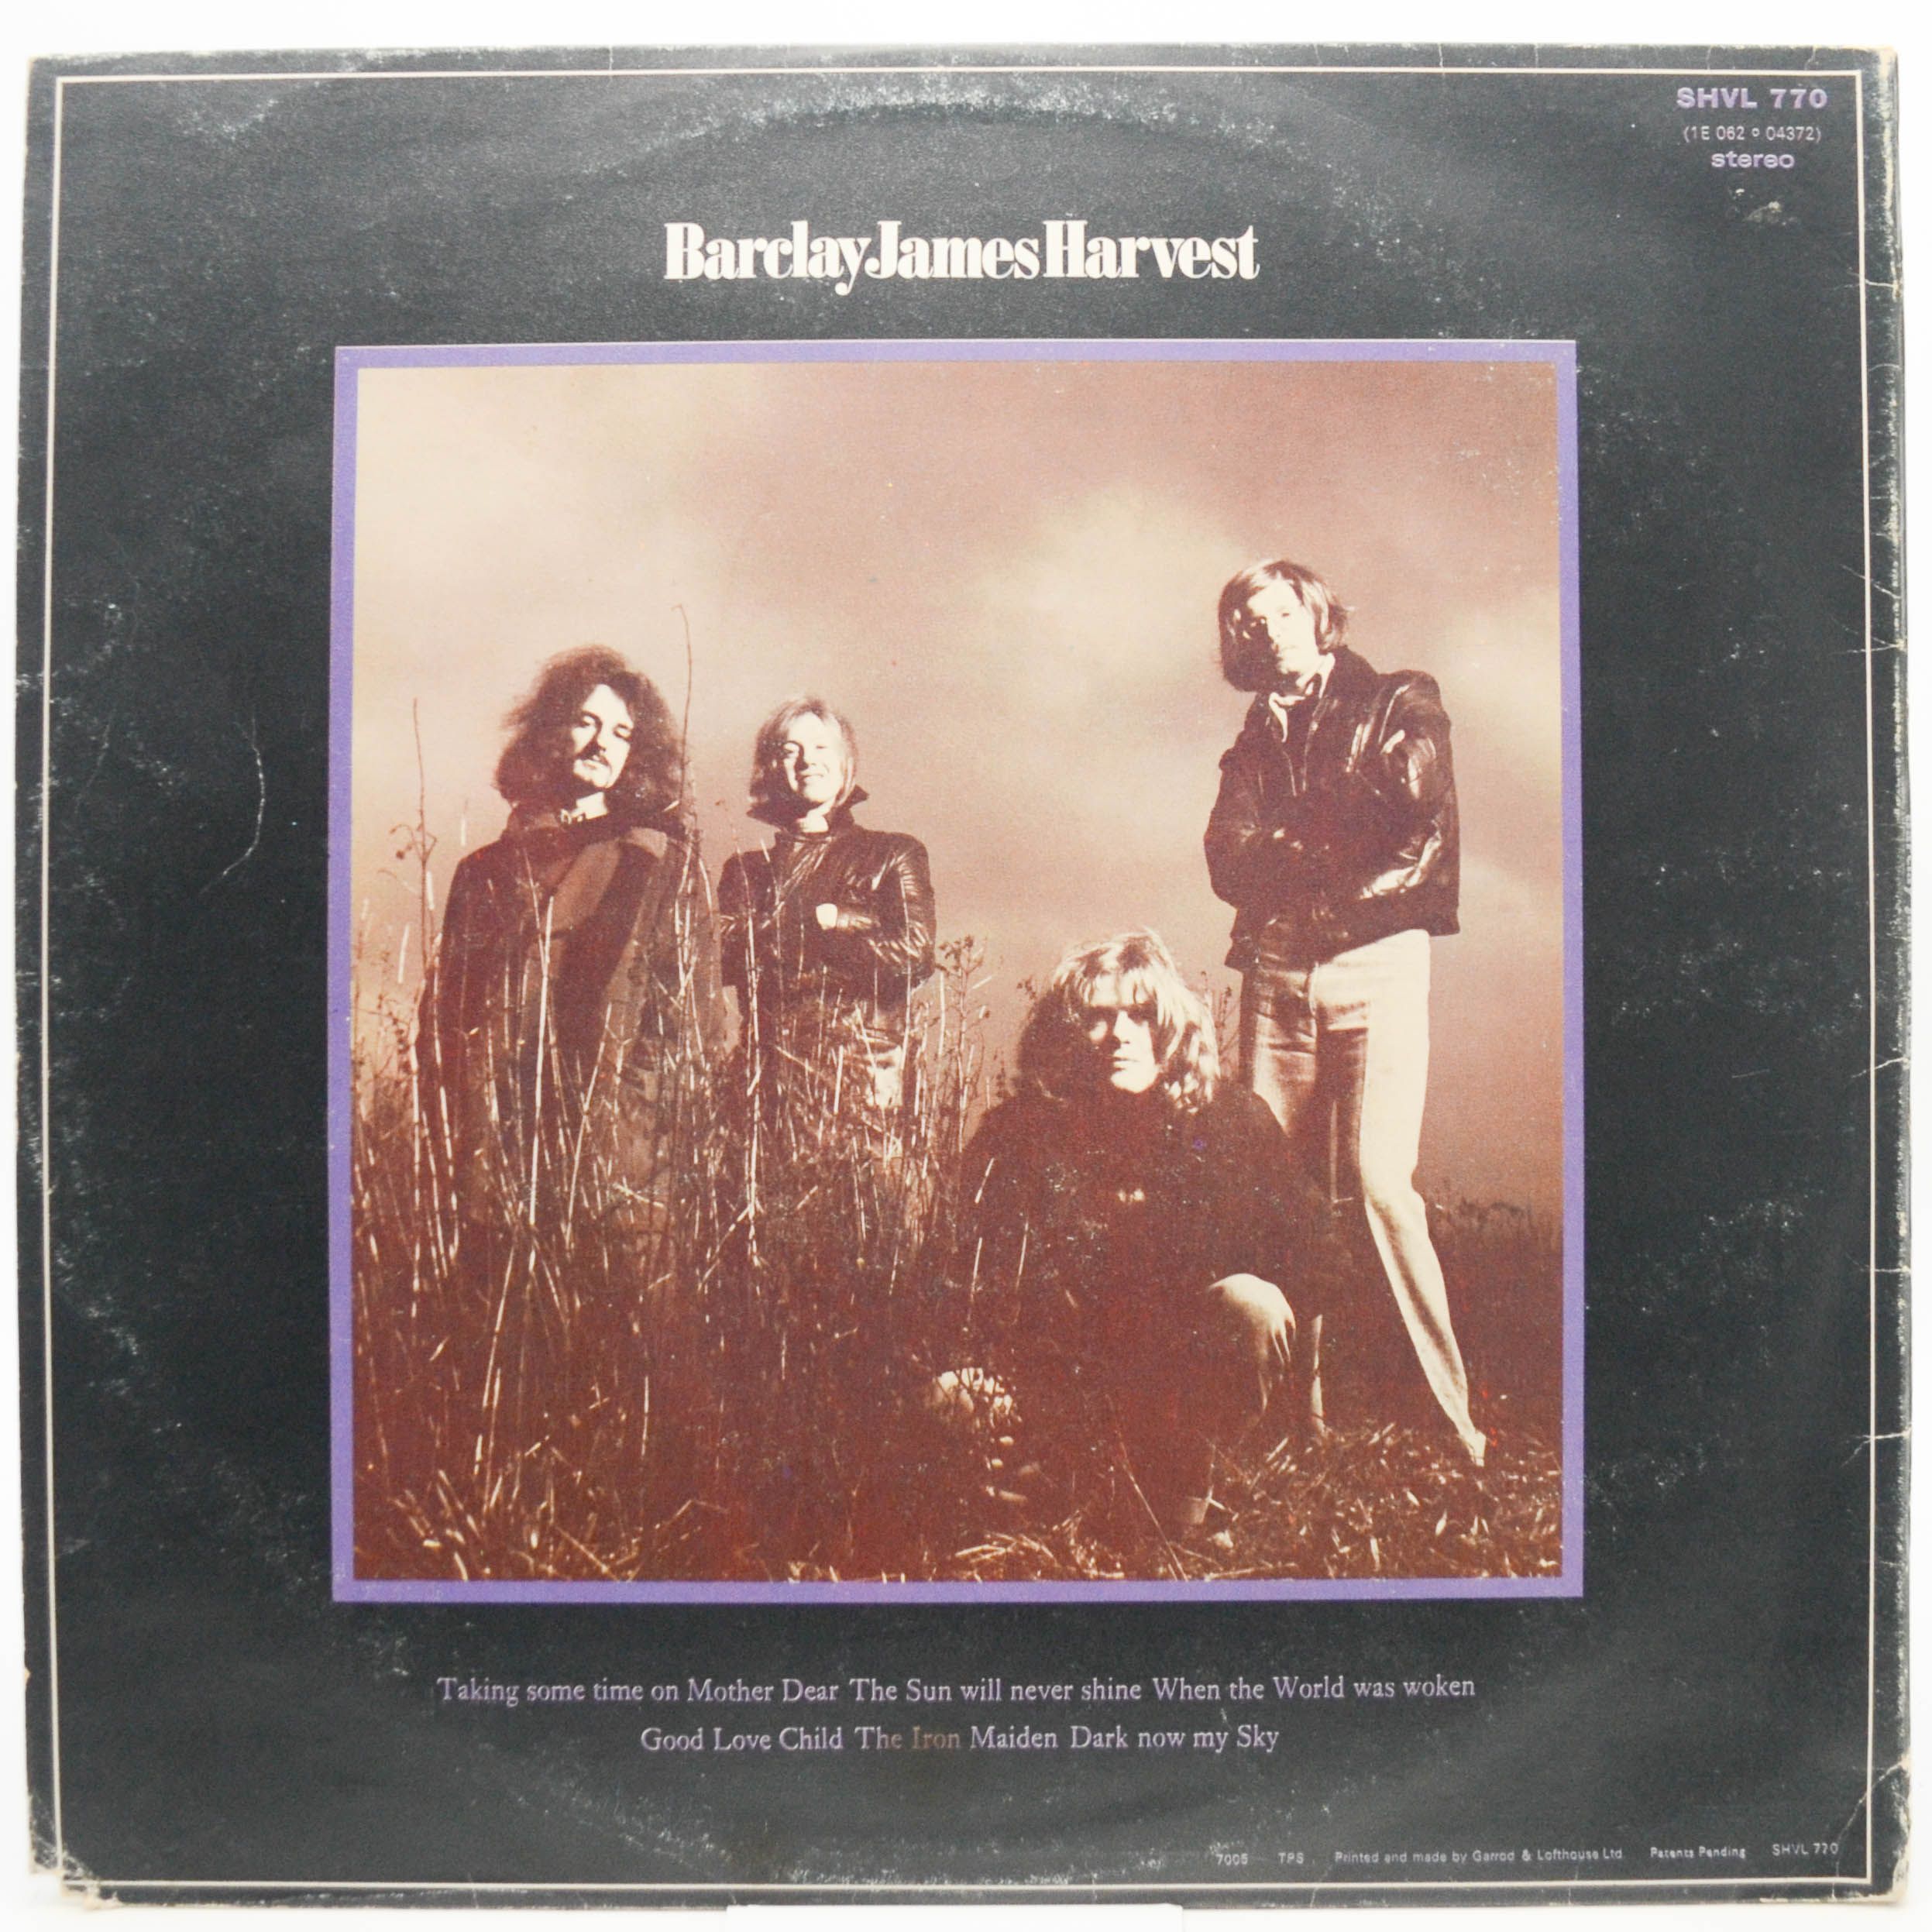 Barclay James Harvest — Barclay James Harvest, 1970